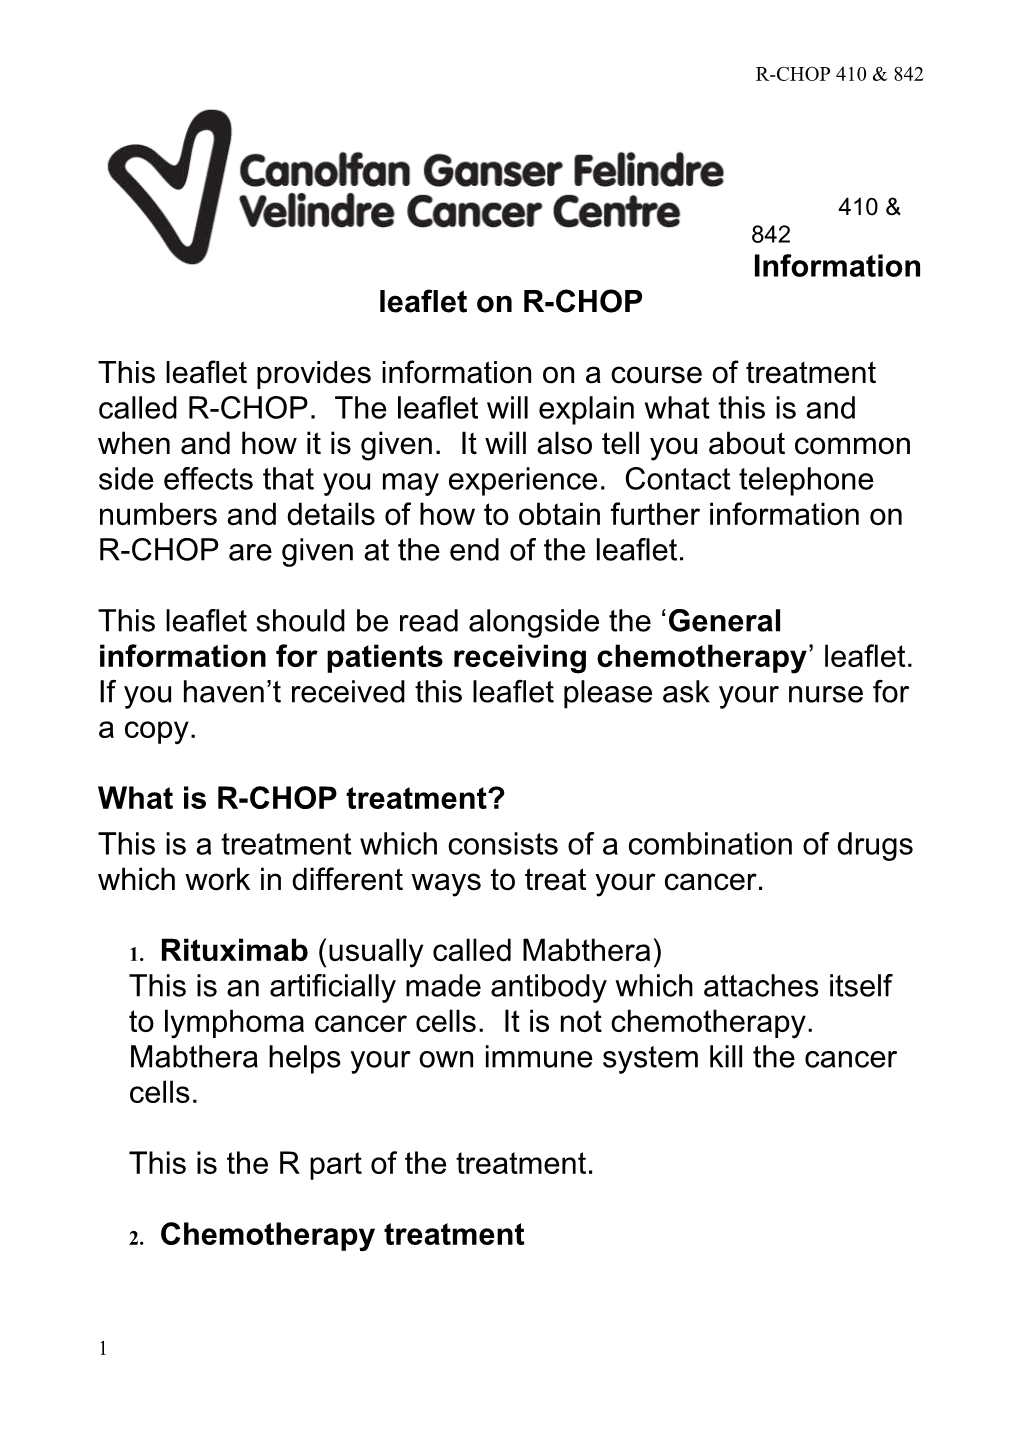 Information Leaflet on R-CHOP